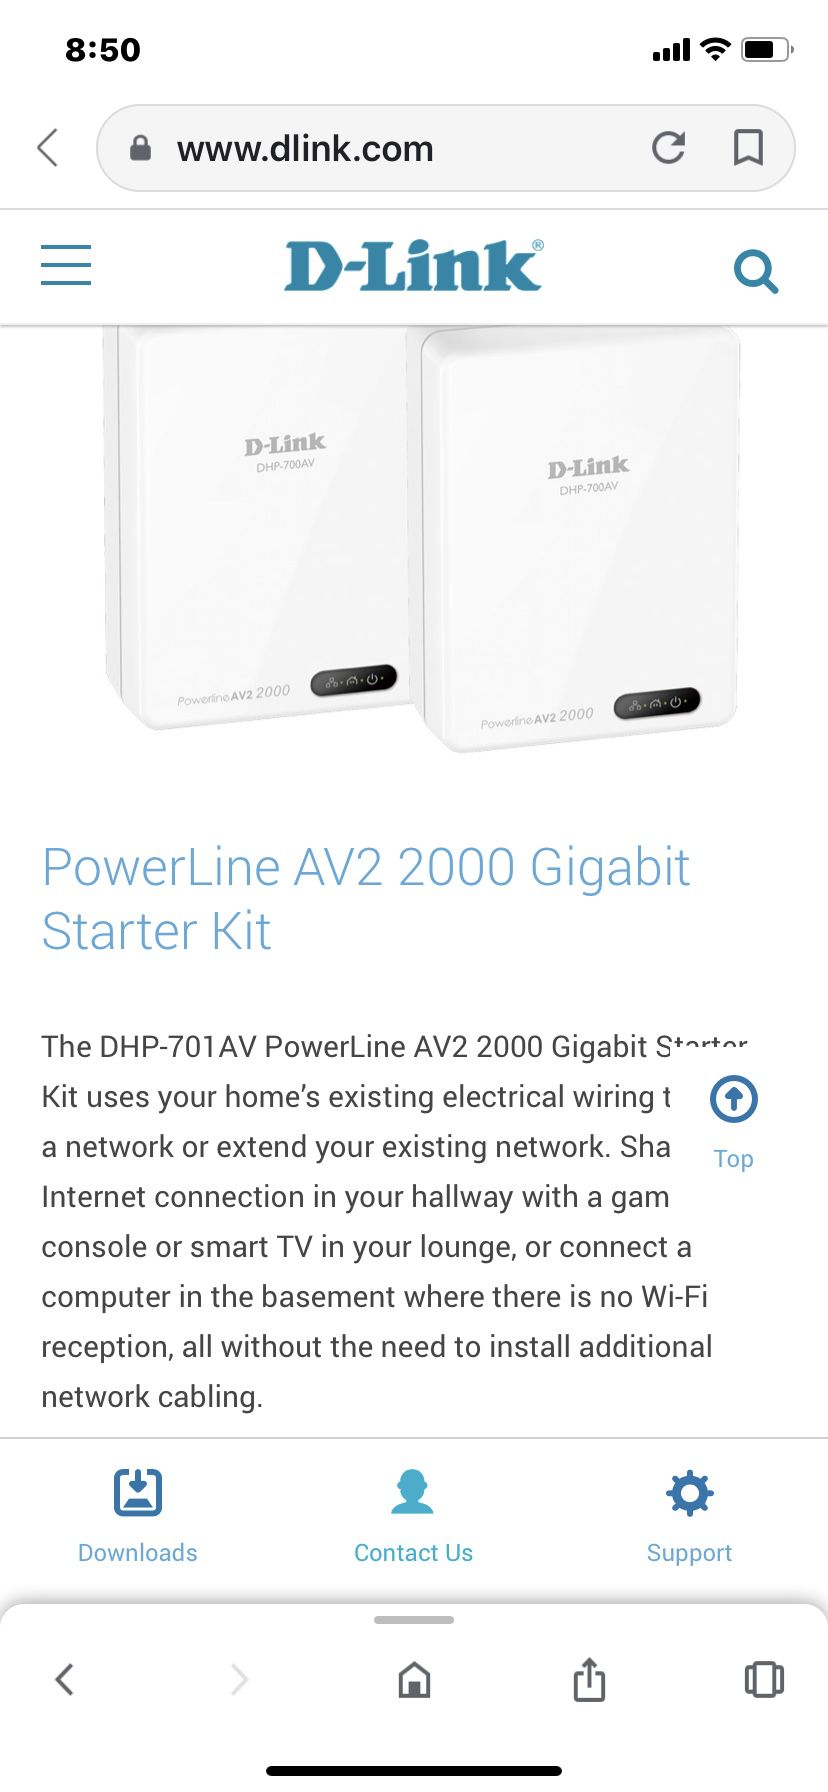 WiFi extender vía home wiring D-Link Av2 2000